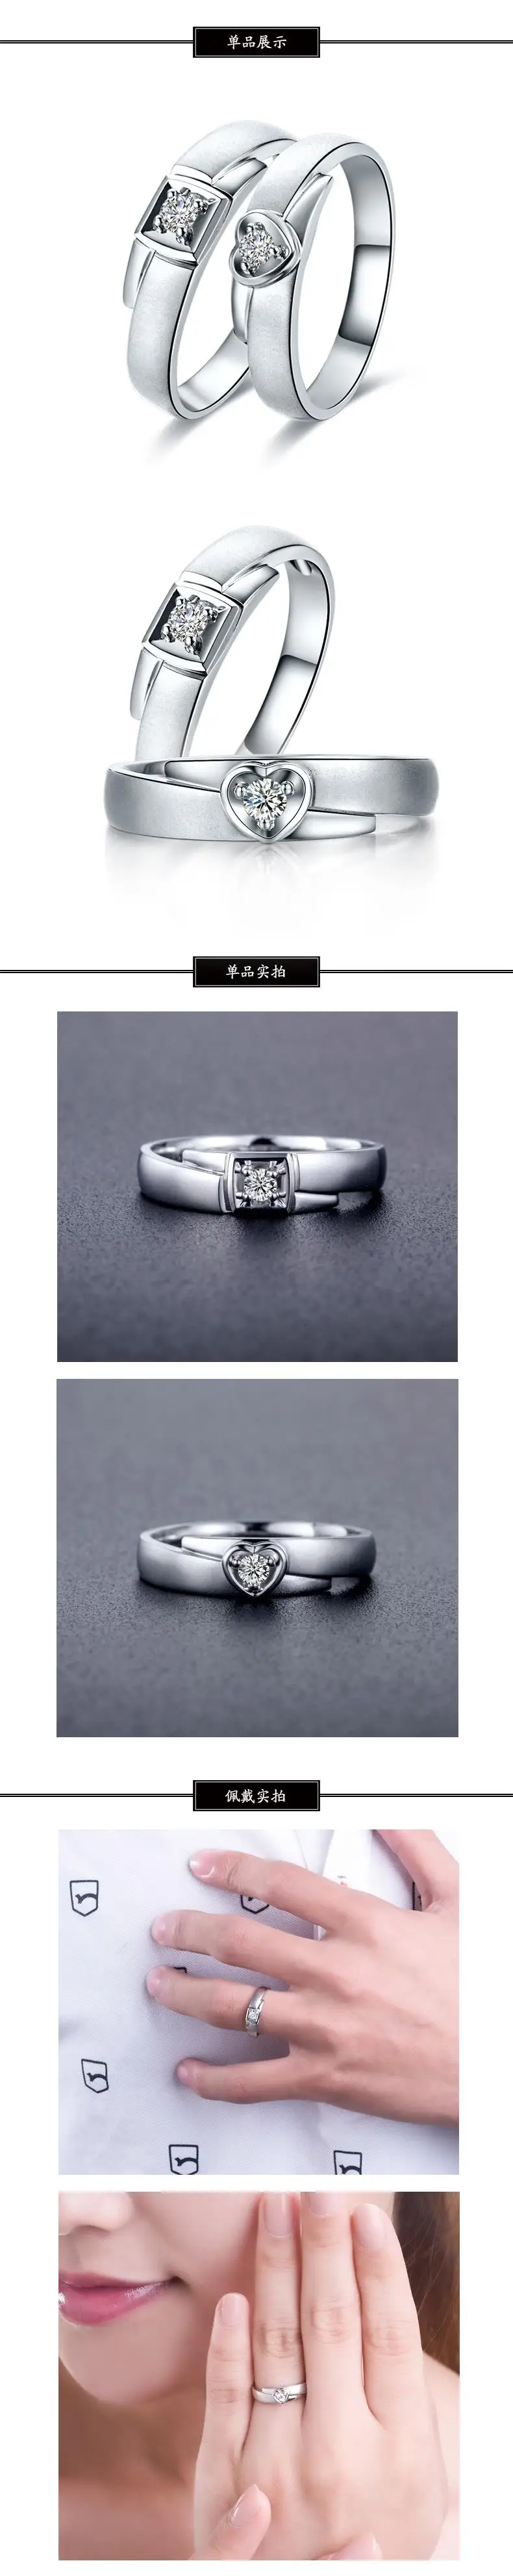 0.15ct/мужчины + 0,07/женщины натуральные обручальные кольца 18K белые золотые ювелирные изделия с бриллиантами